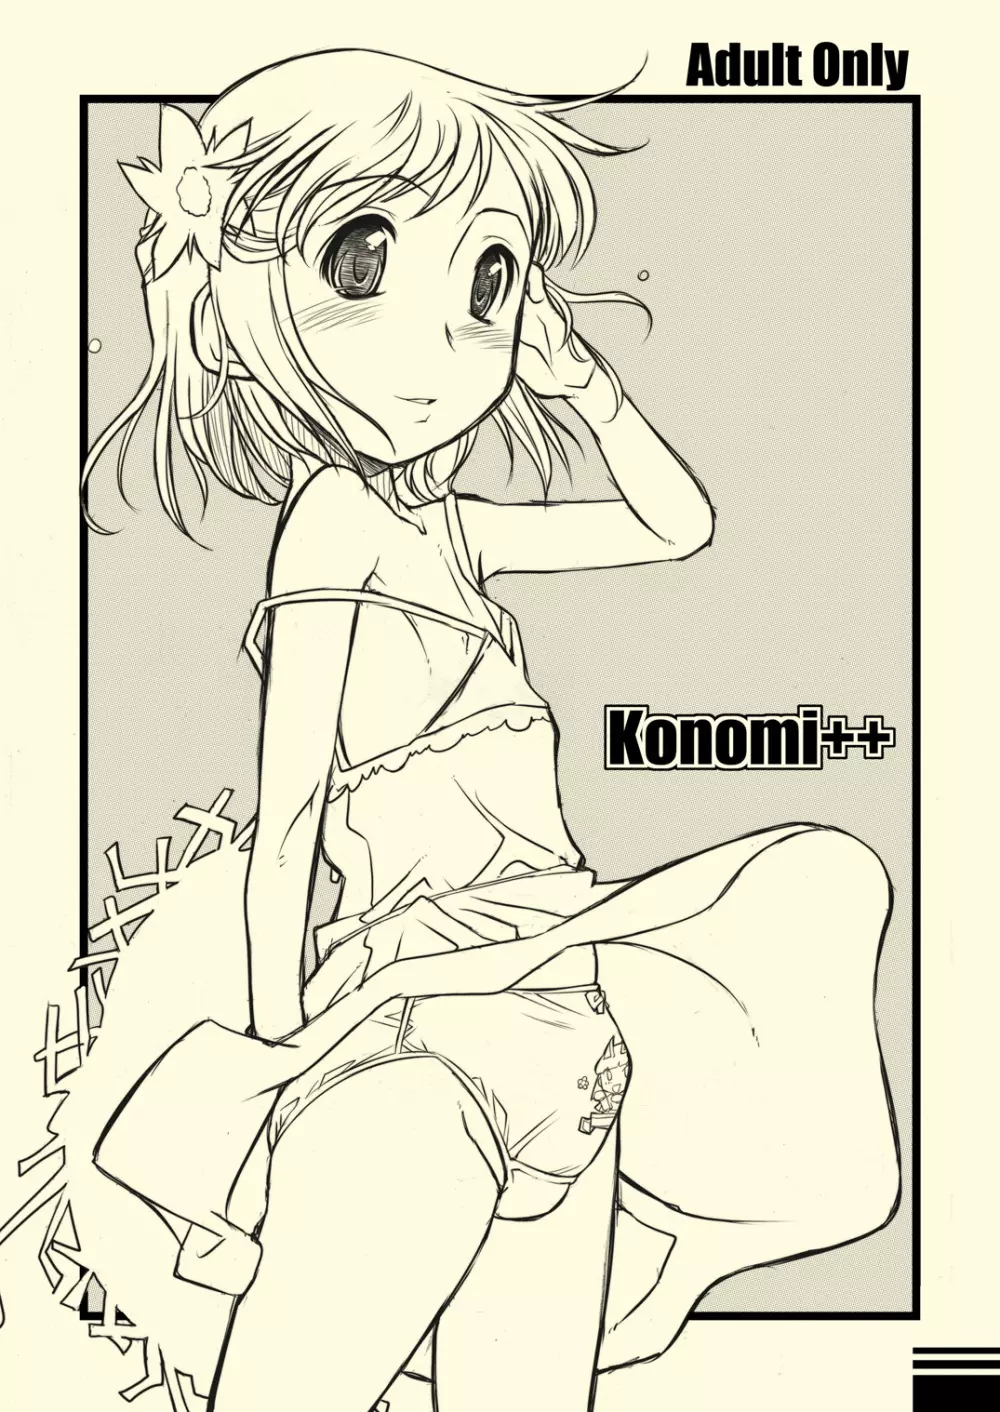 konomi++ - page1